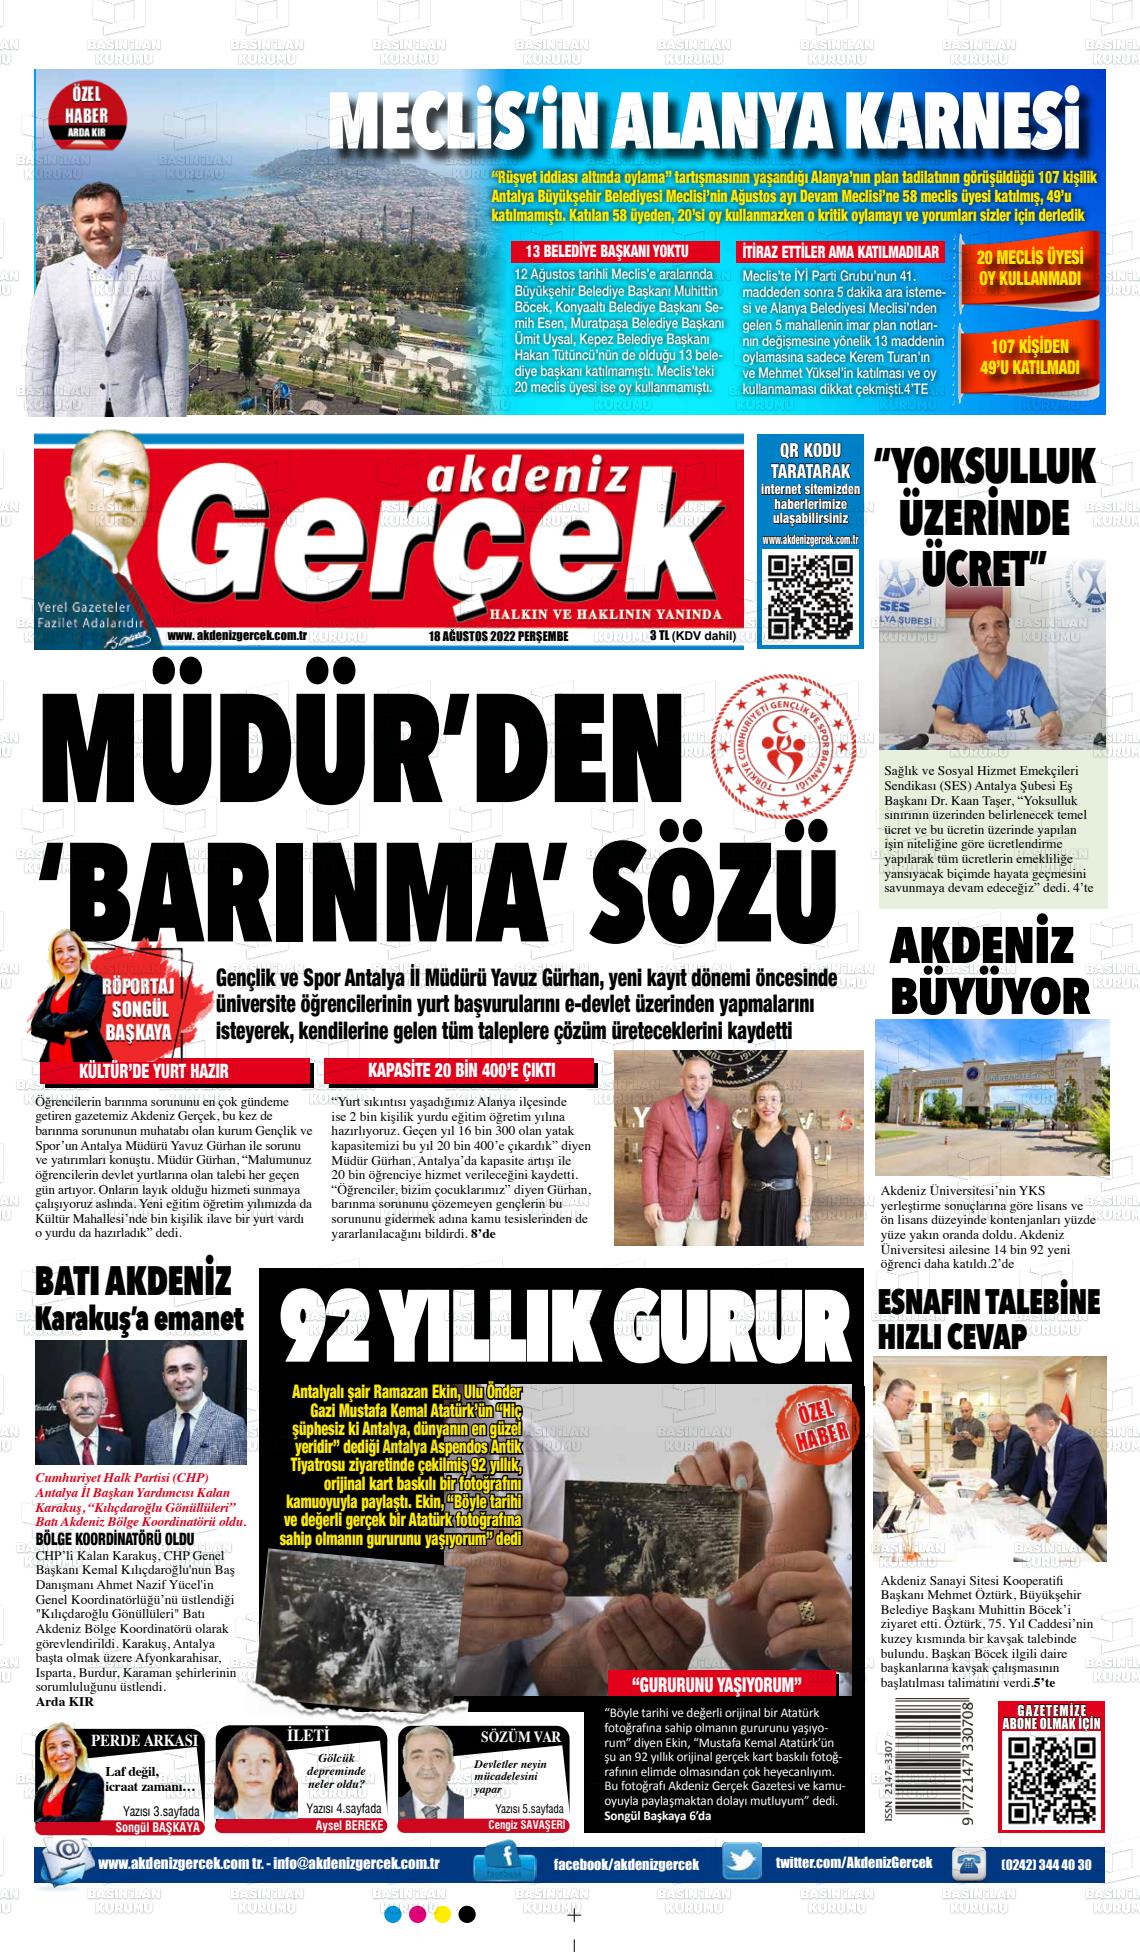 18 Ağustos 2022 Akdeniz Gerçek Gazete Manşeti